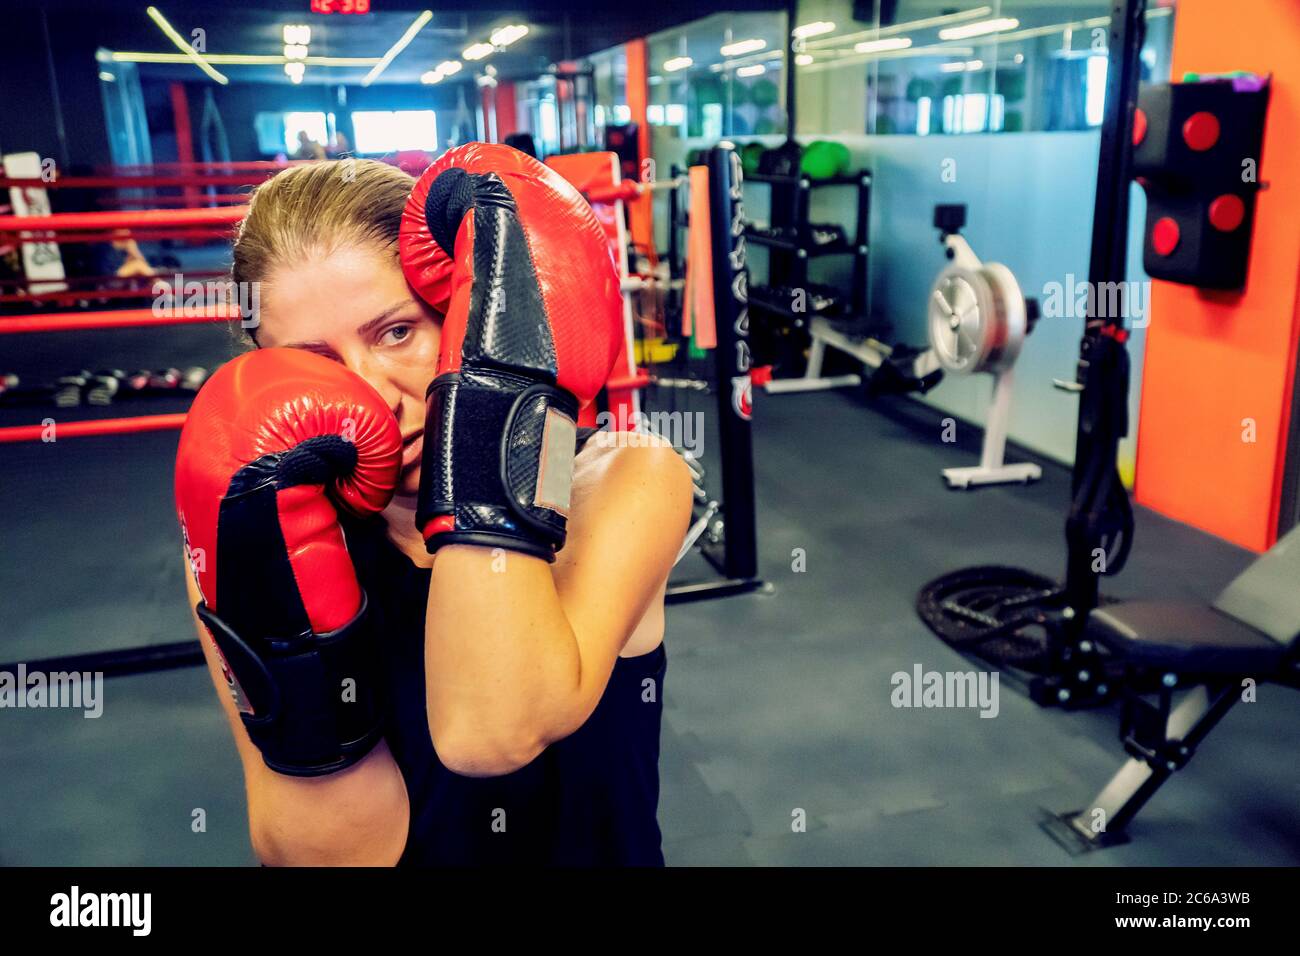 Junge Frau trainiert Kickboxen in einem Studio für gesundes Leben und Selbstverteidigung. Sie trägt schwarze und rote Boxhandschuhe Stockfoto